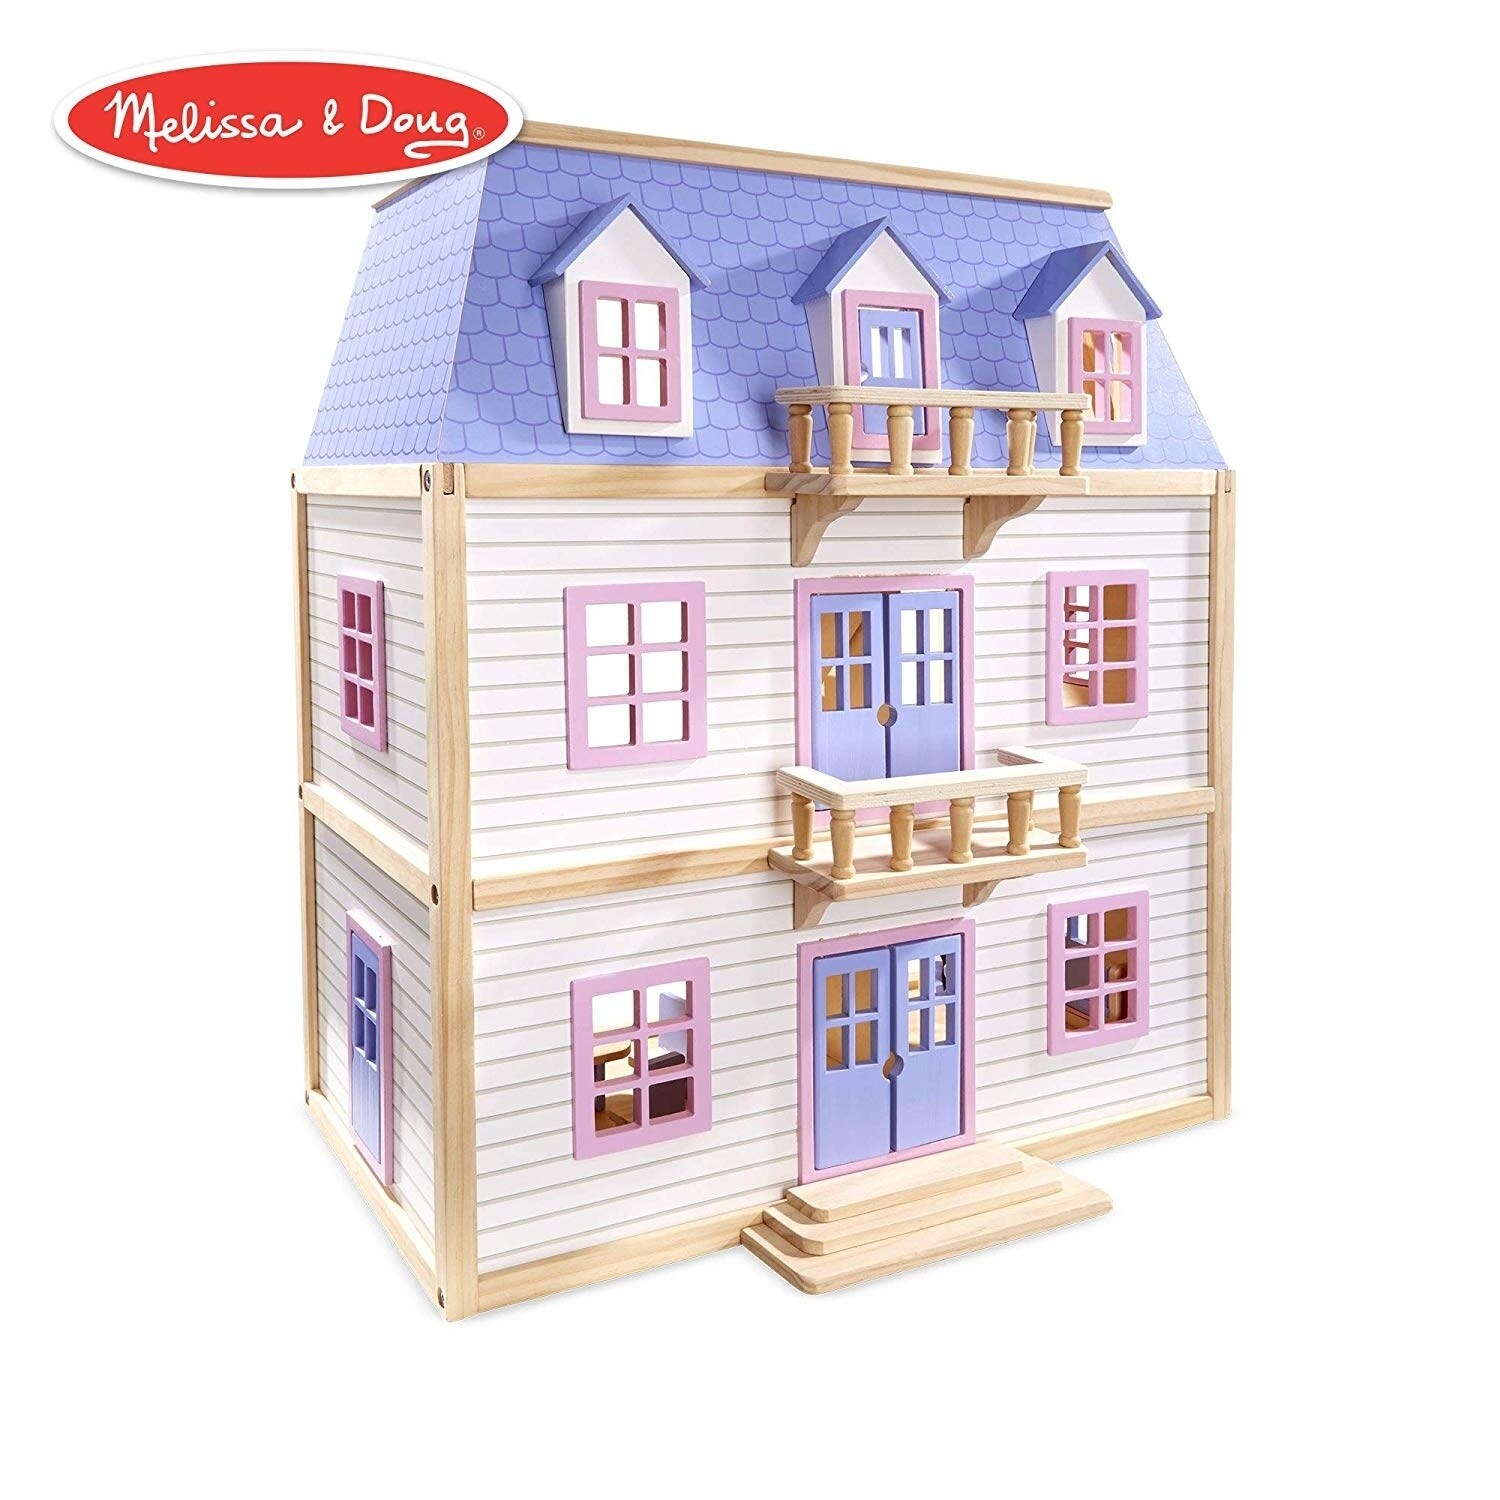 melissa & doug wooden dollhouses